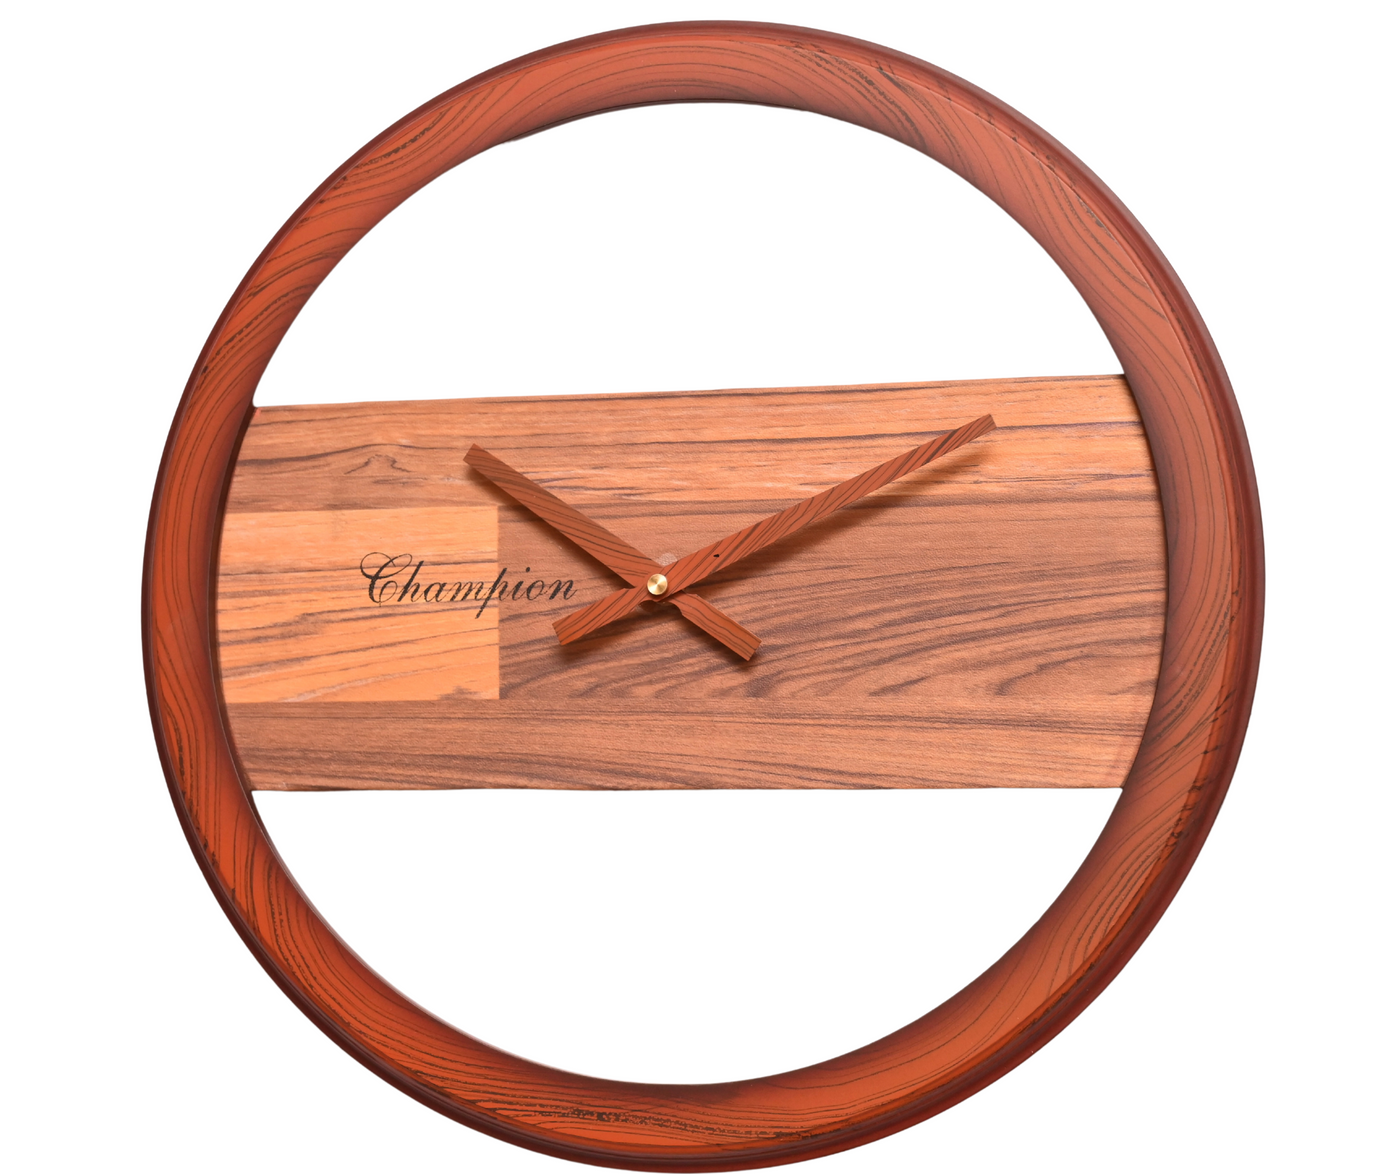 Champion's Handcrafted Novum Oak Wall Clock